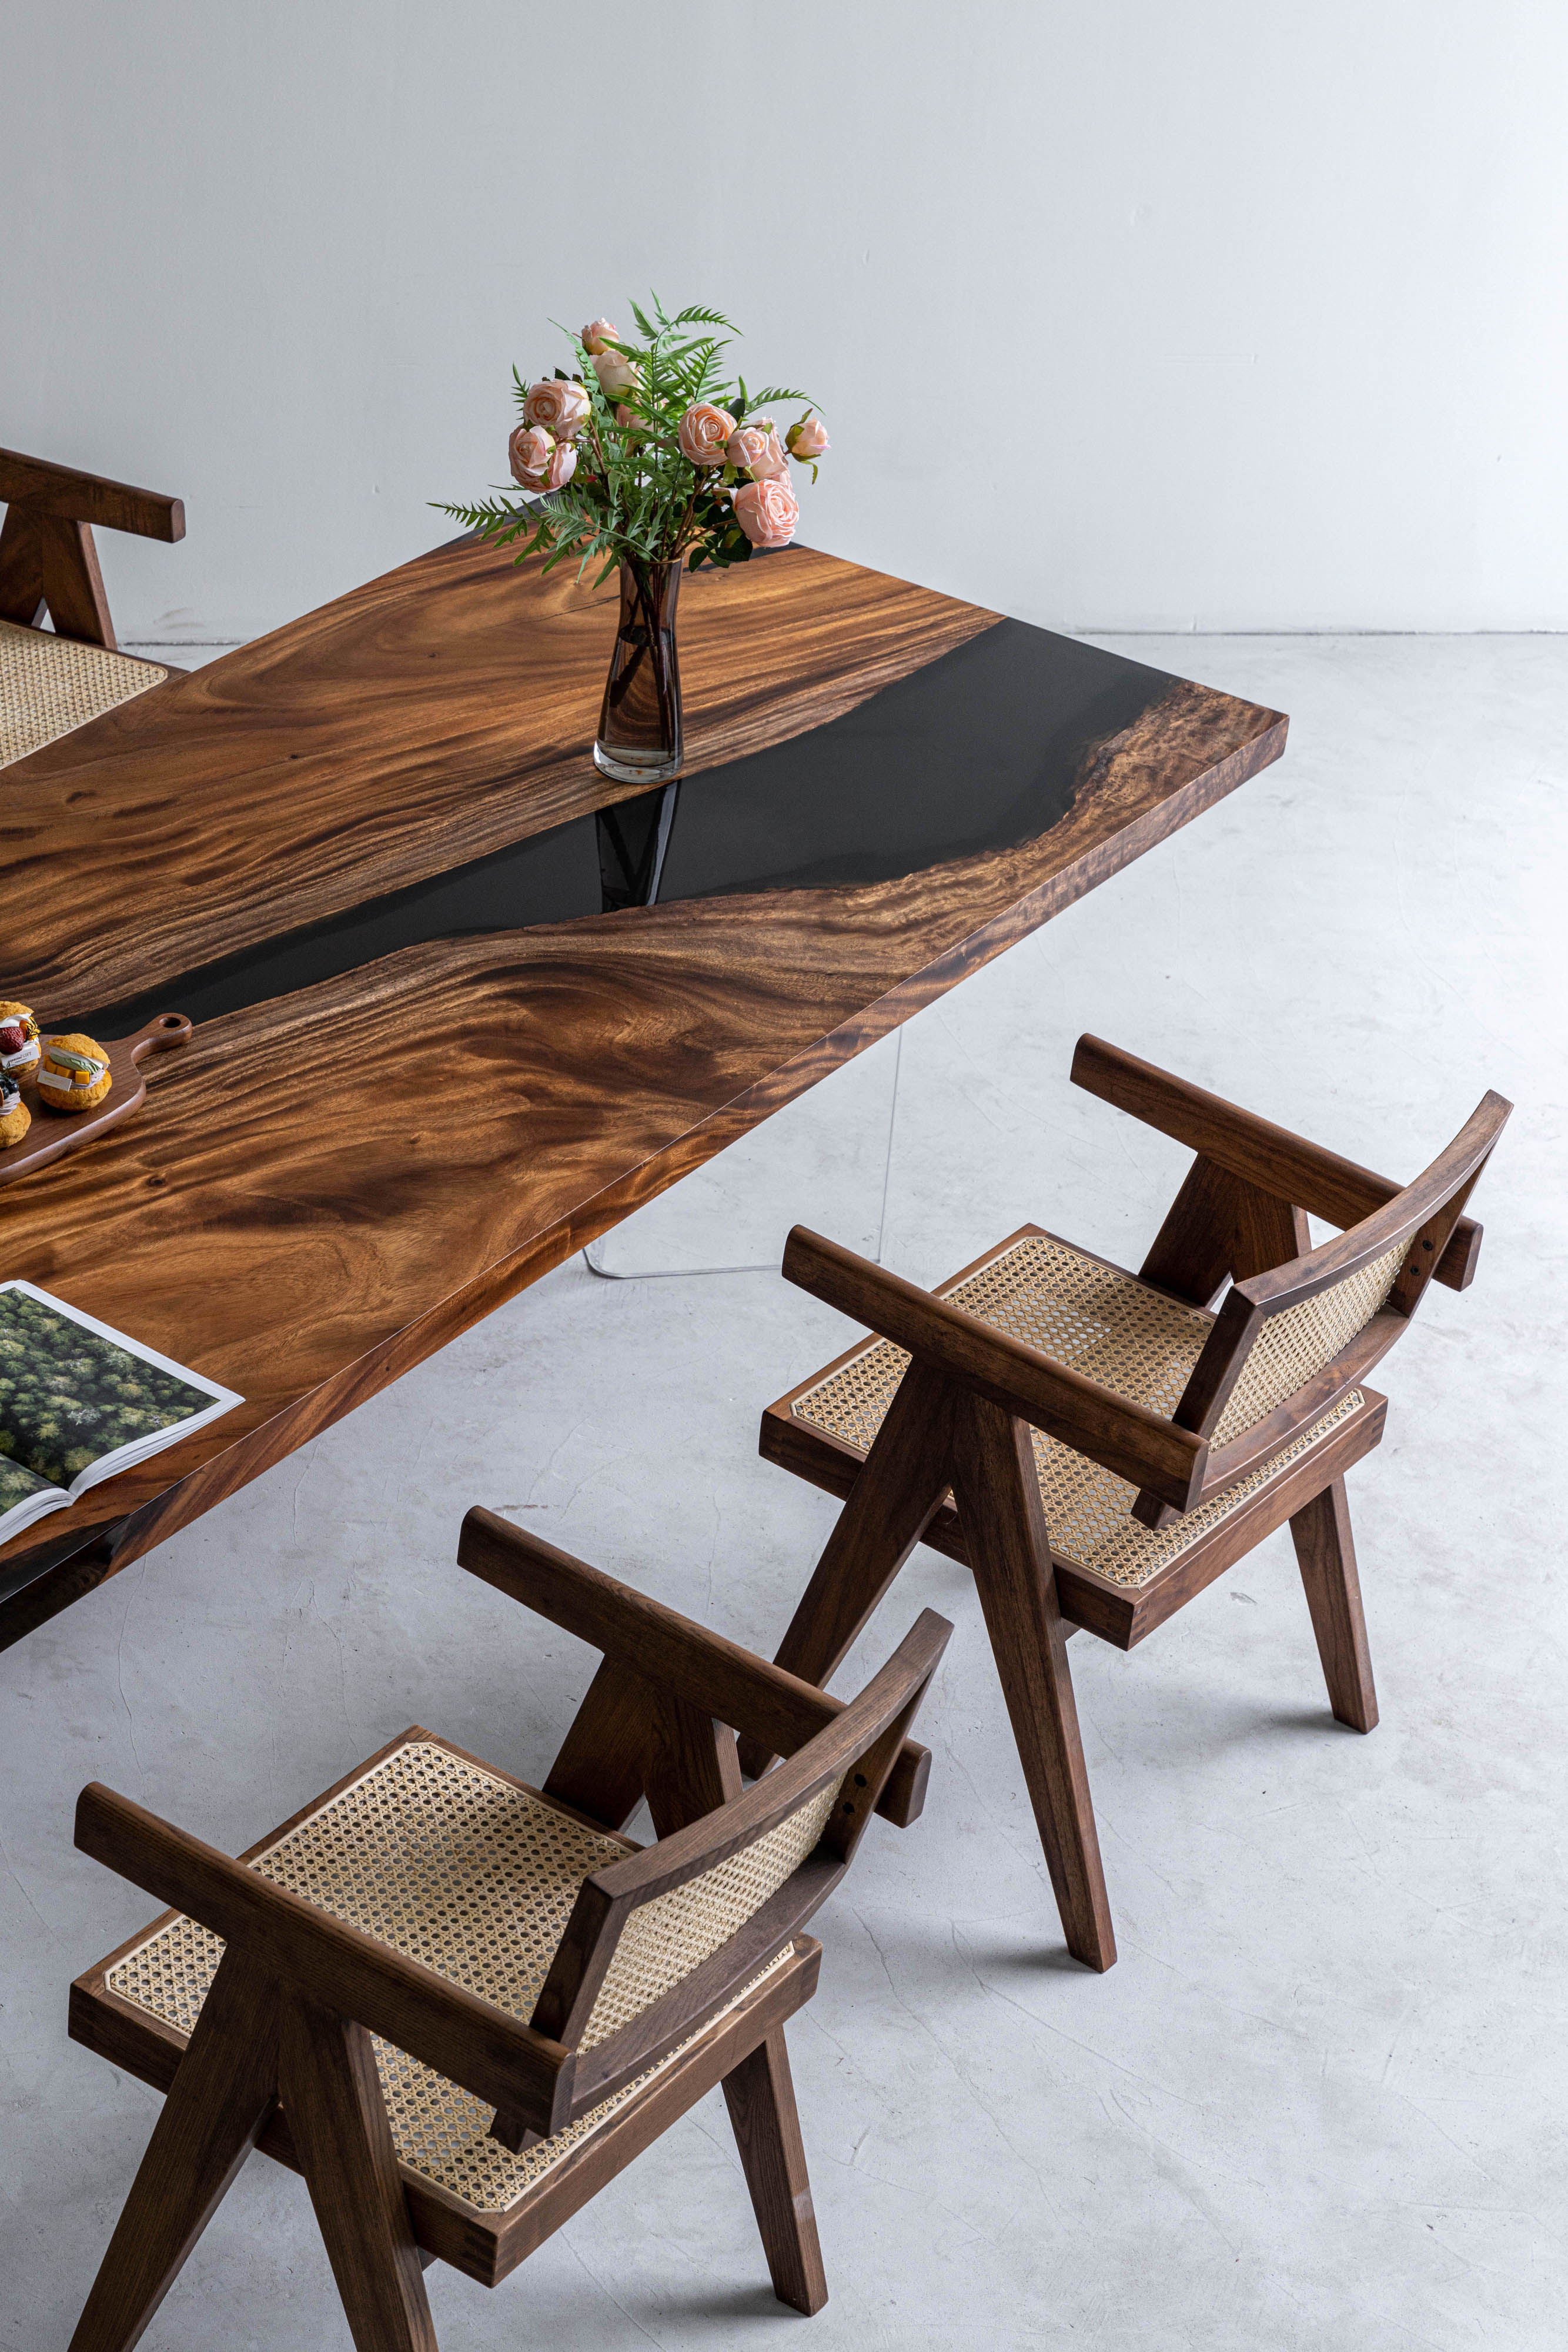 لون الجوز الأسود ملون على طاولة راتنجات الإيبوكسي، استخدم خشب الجوز من أمريكا الجنوبية